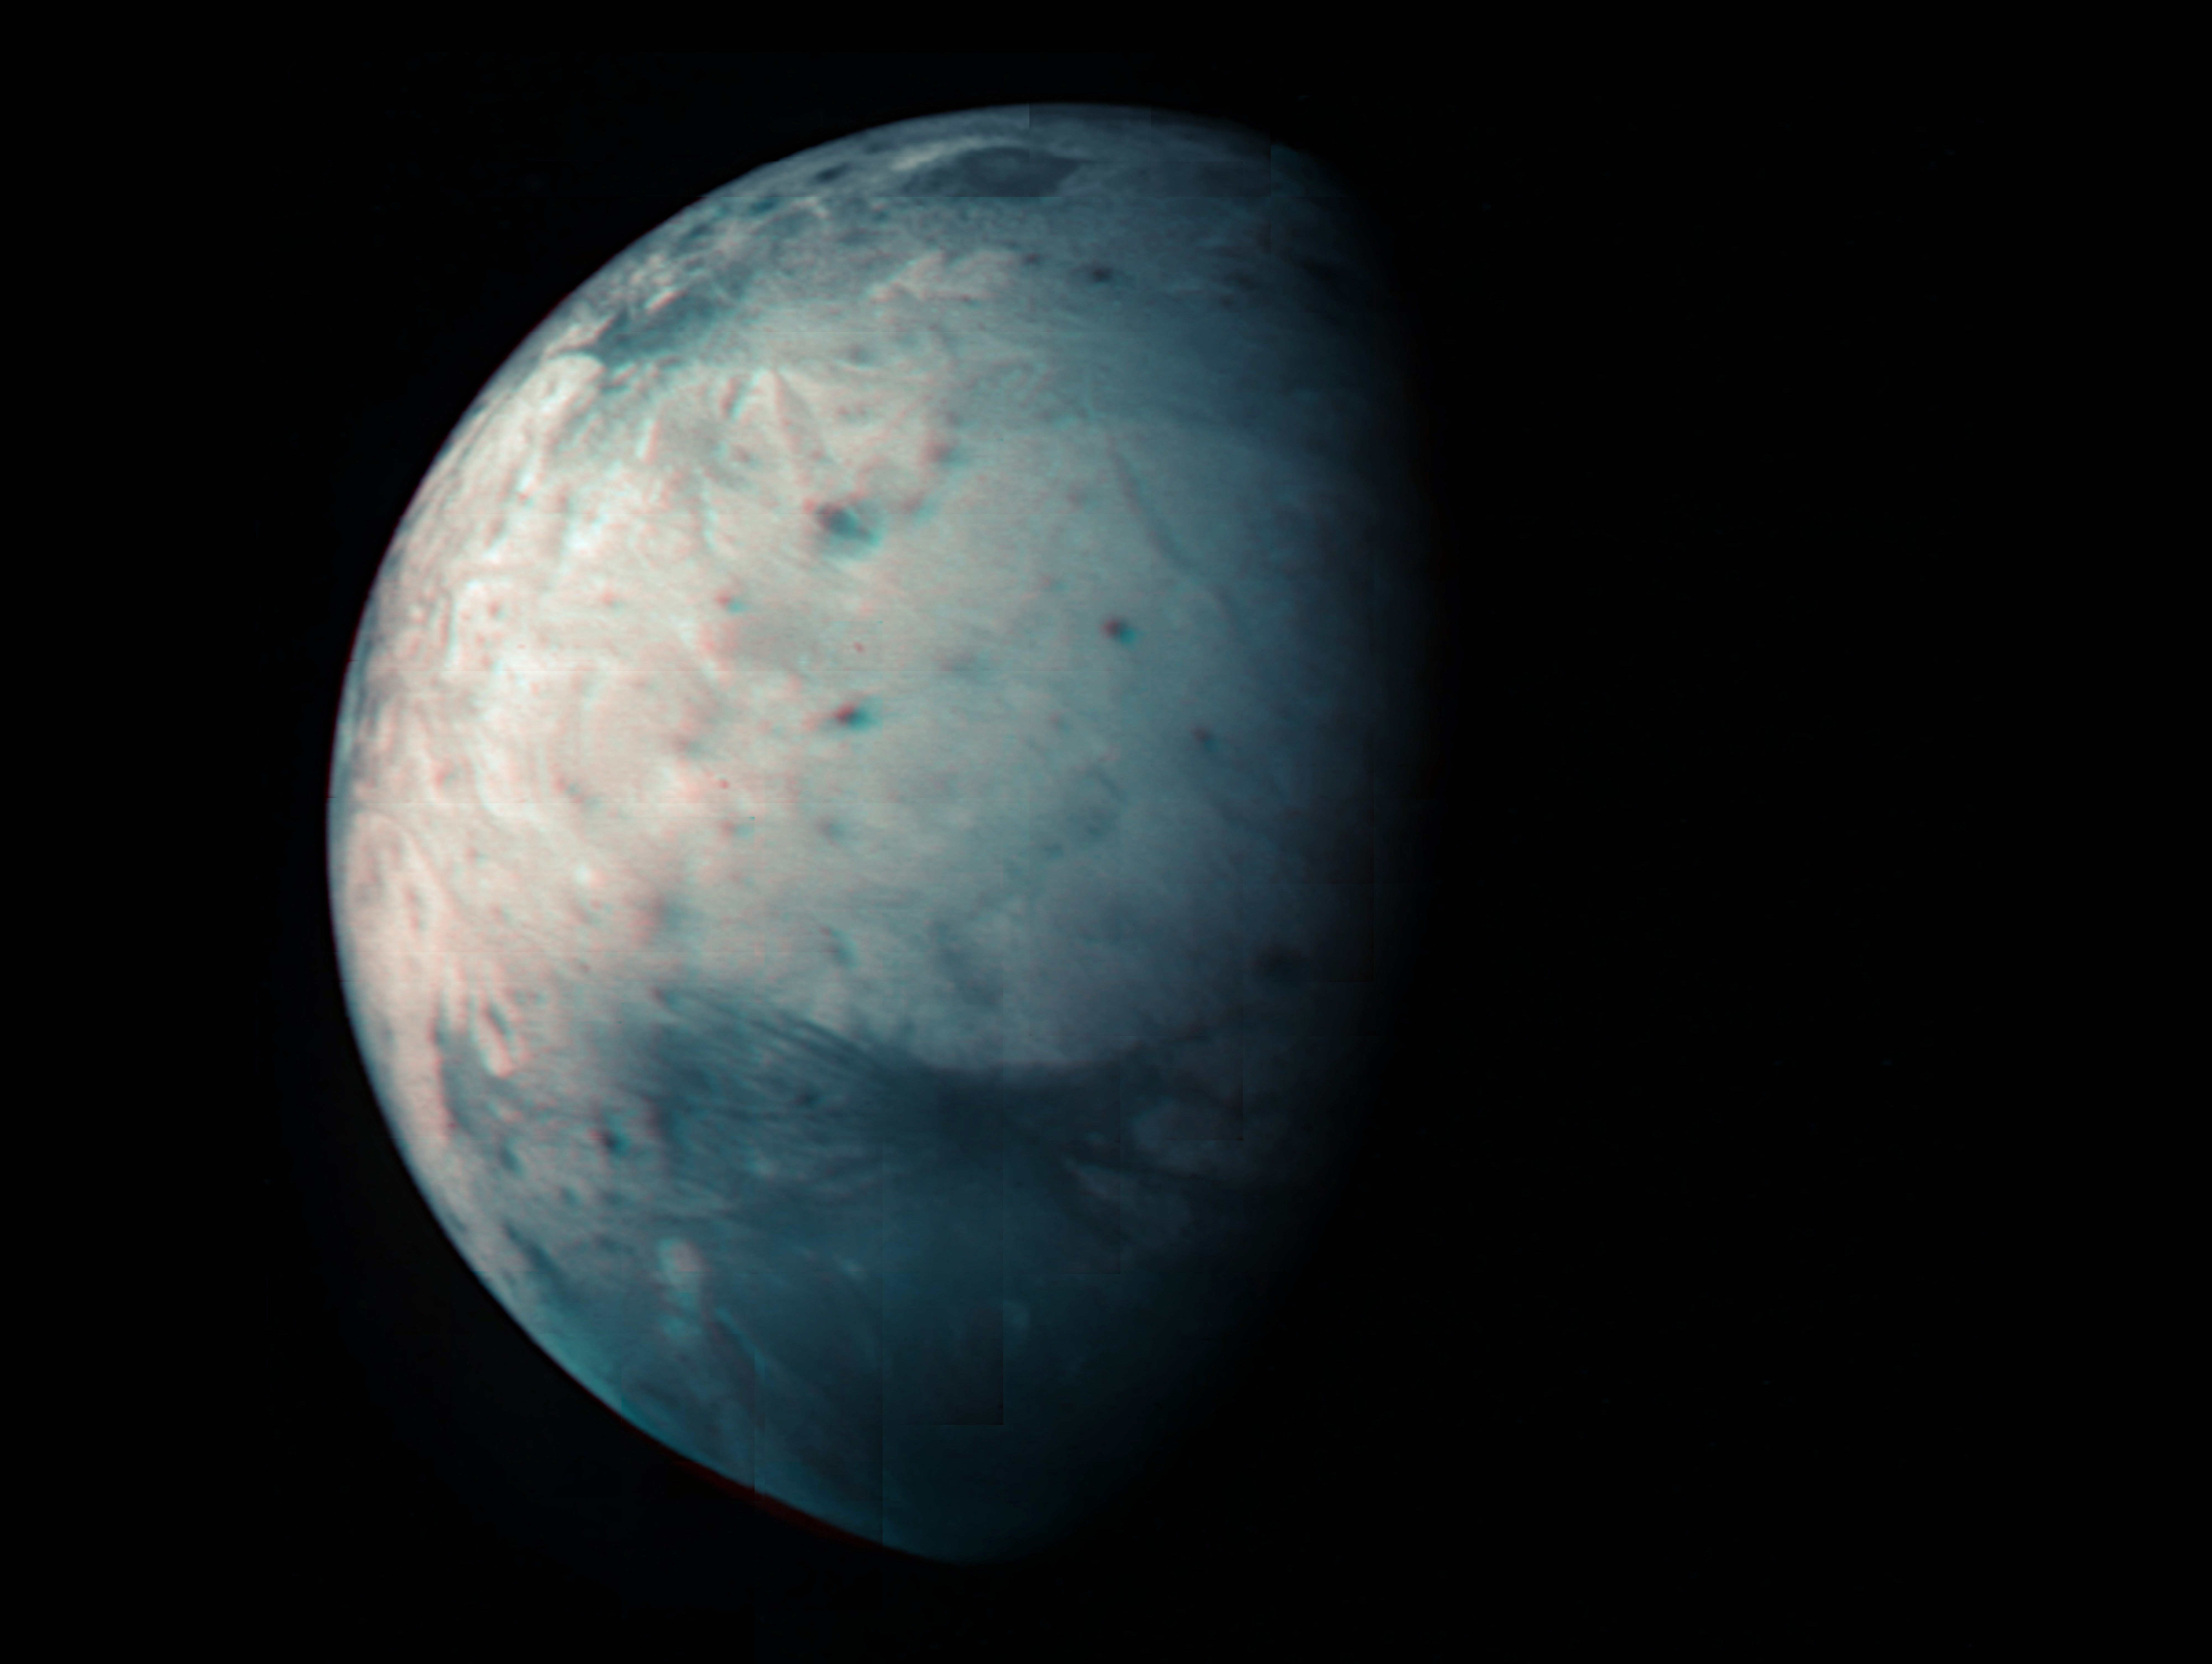 La vista infrarroja de la luna helada de Júpiter, Ganímedes, fue obtenida por el instrumento Jovian Infrared Auroral Mapper (JIRAM) a bordo de la  nave espacial Juno de la NASA (NASA/JPL-CALTECH)
